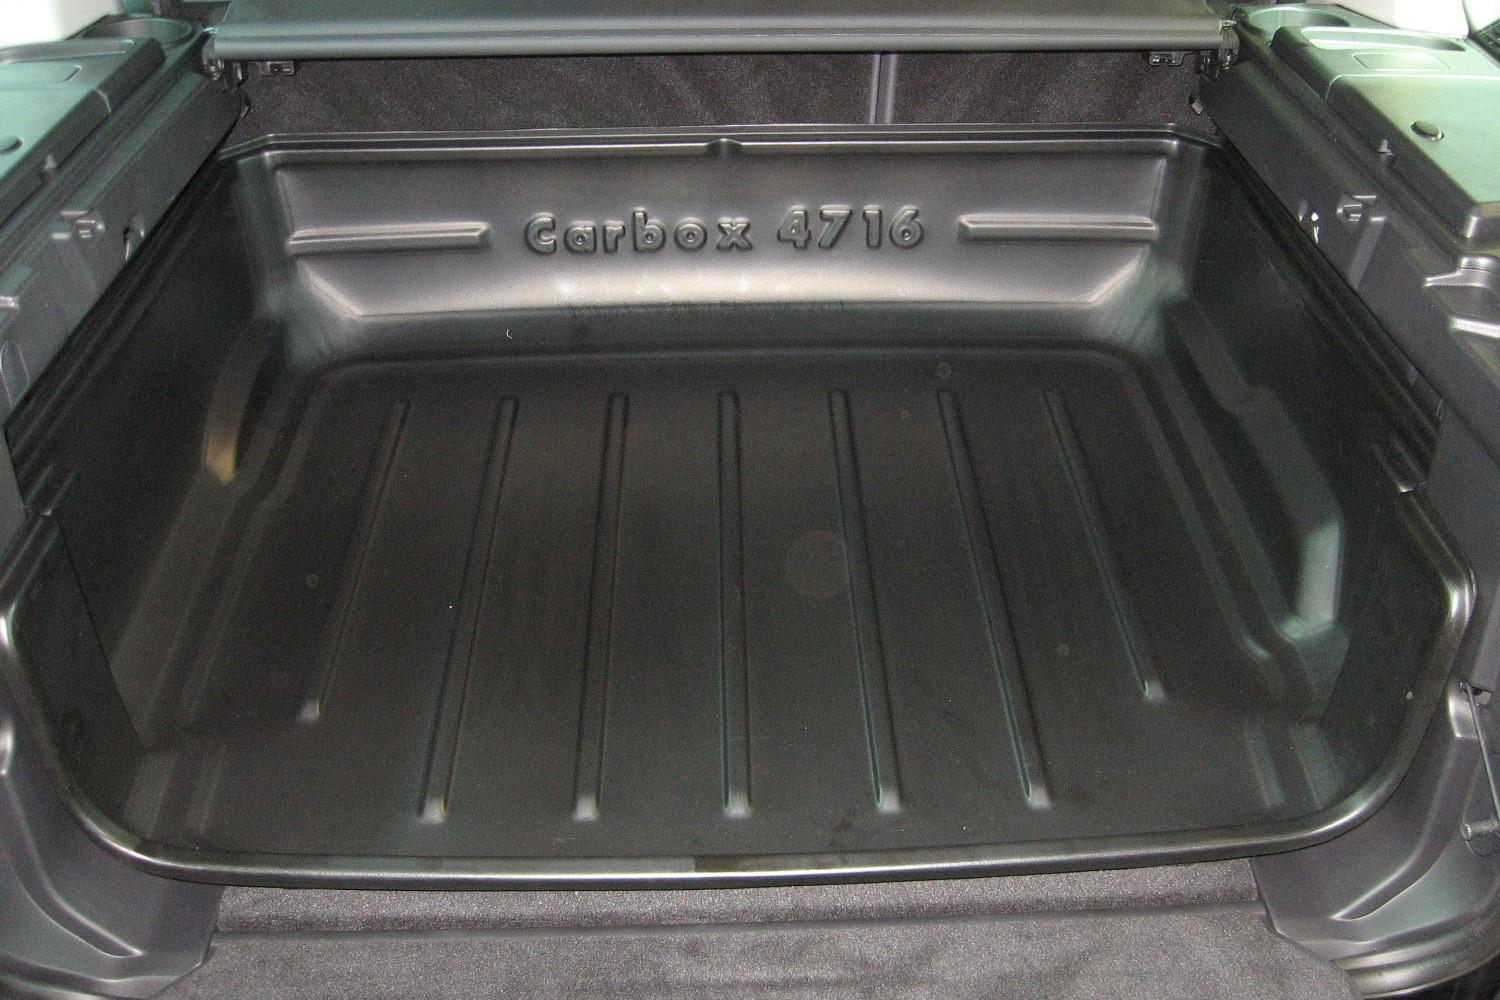 Kofferraumwanne passend für Land Rover Discovery 4 2009-2017 Carbox Classic hochwandig